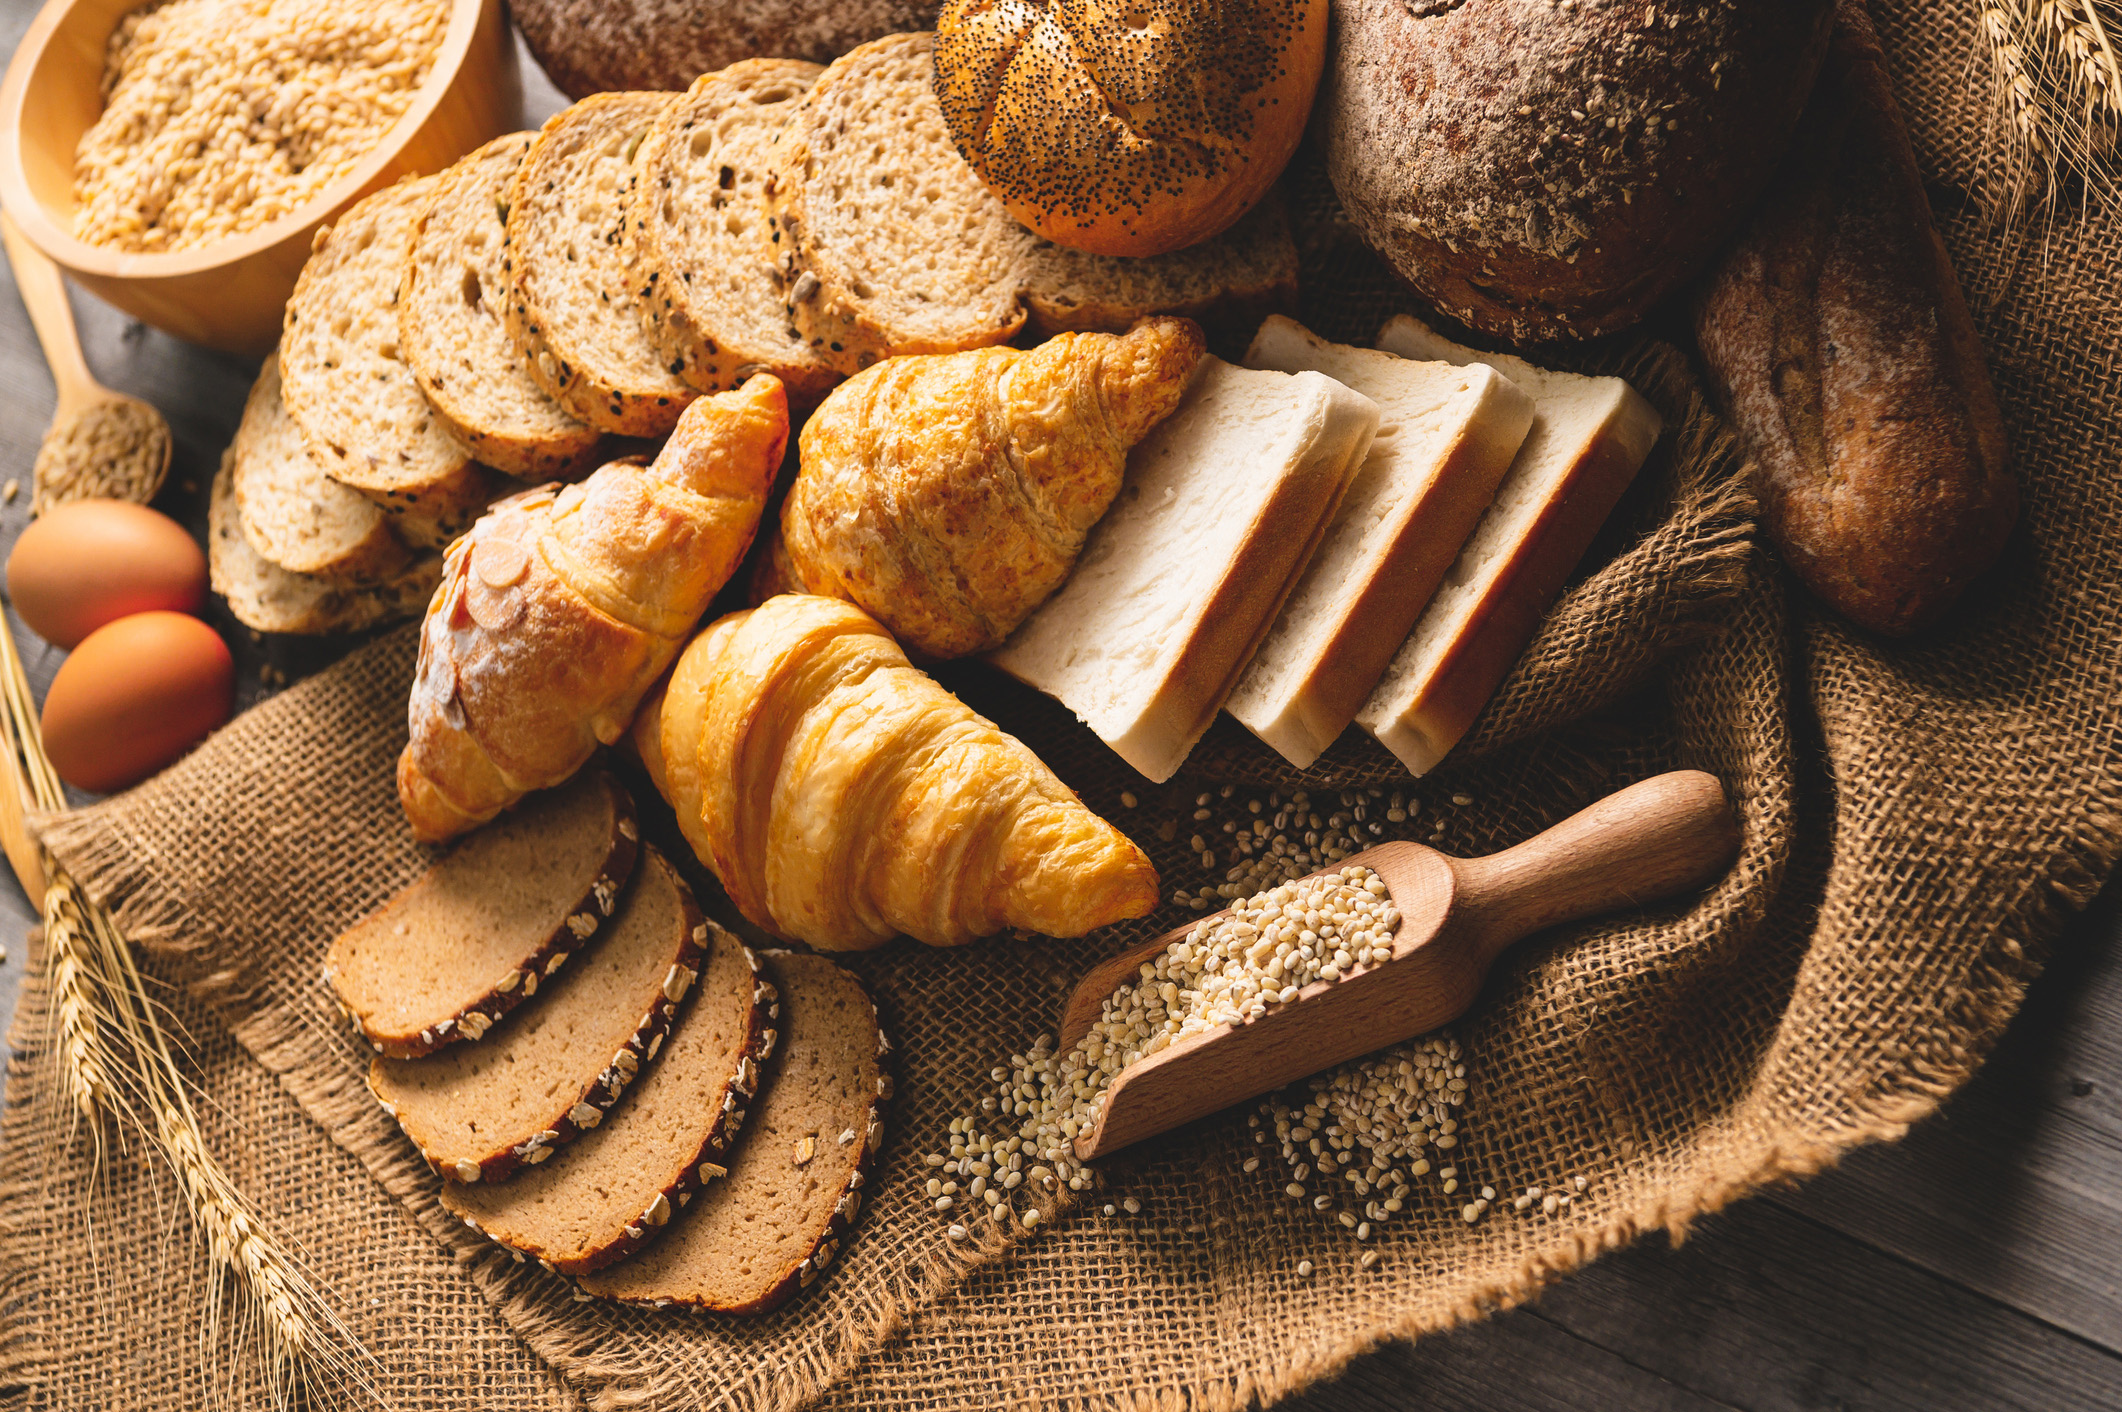 食用精制主食，如面包、谷物和面食与T2D风险无关